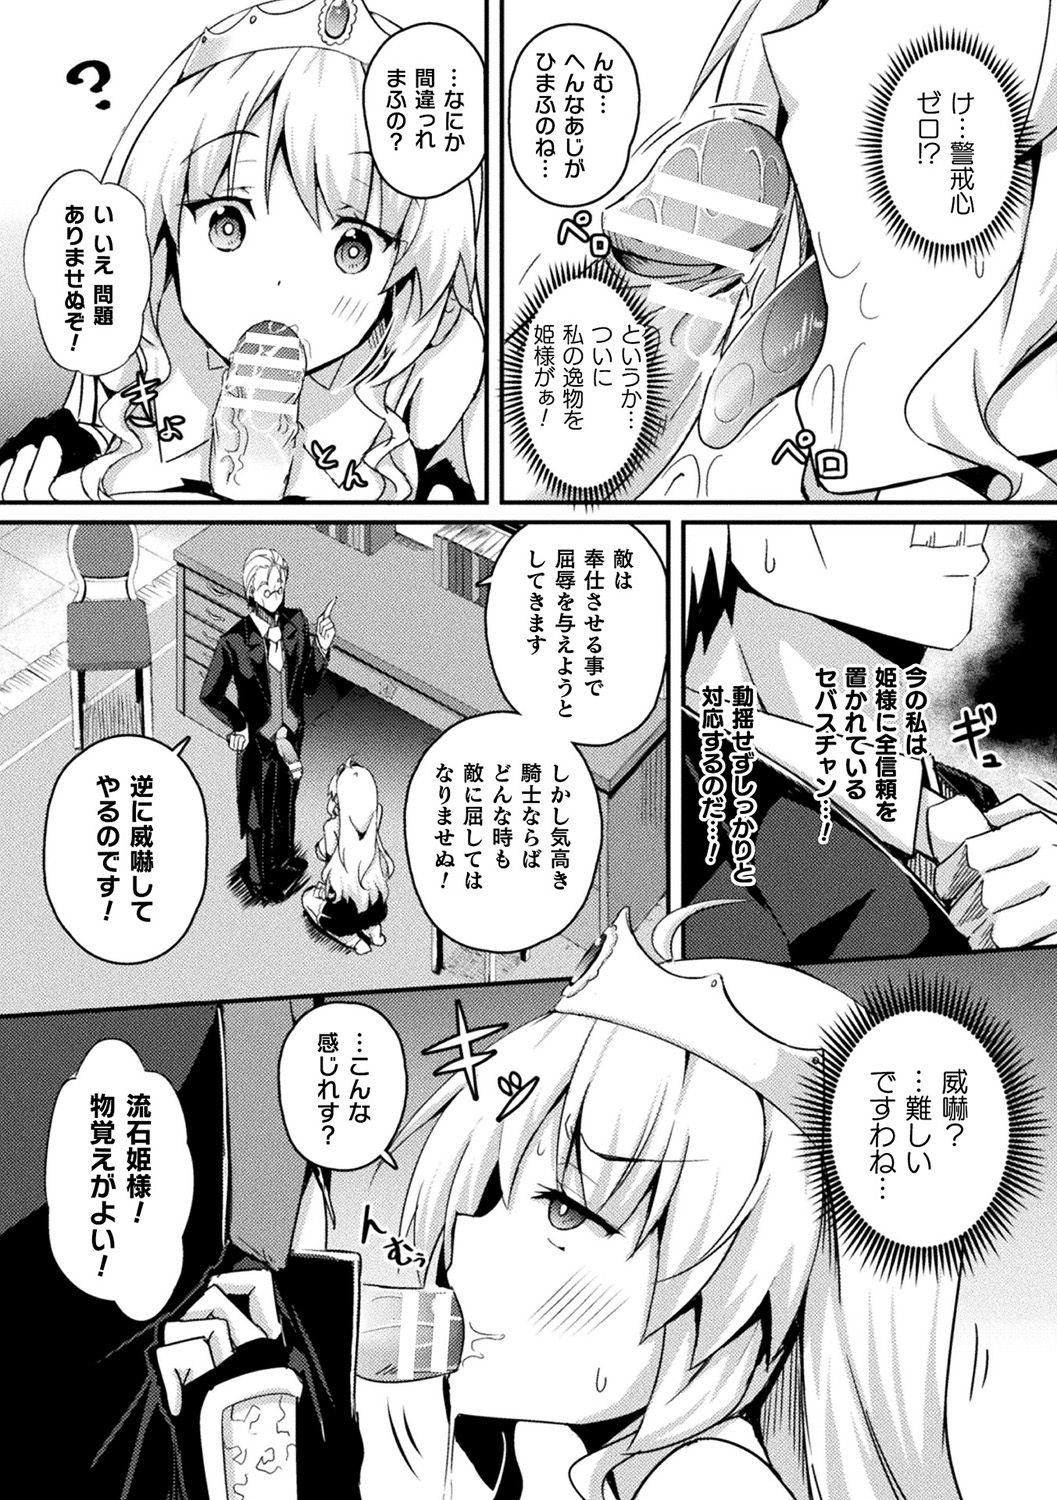 [Anthology] Bessatsu Comic Unreal Ponkotsu Fantasy Heroine H ~Doji o Funde Gyakuten Saretari Ero Trap ni Hamattari!?~ Vol. 2 [Digital] page 7 full